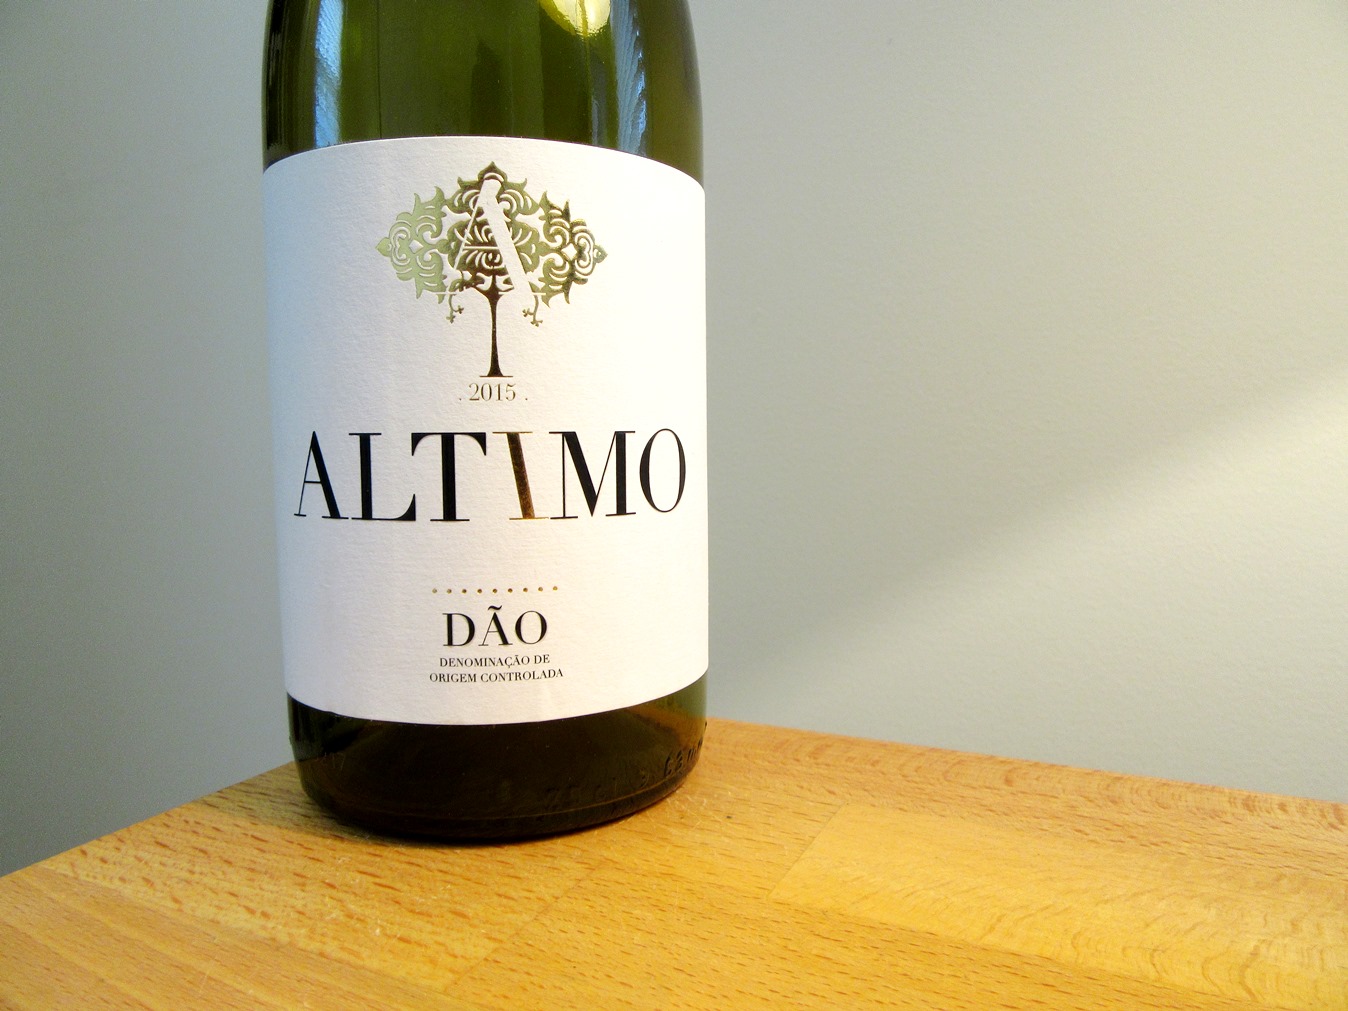 Altimo, Vinho Tinto 2015, Dao, Portugal, wine review